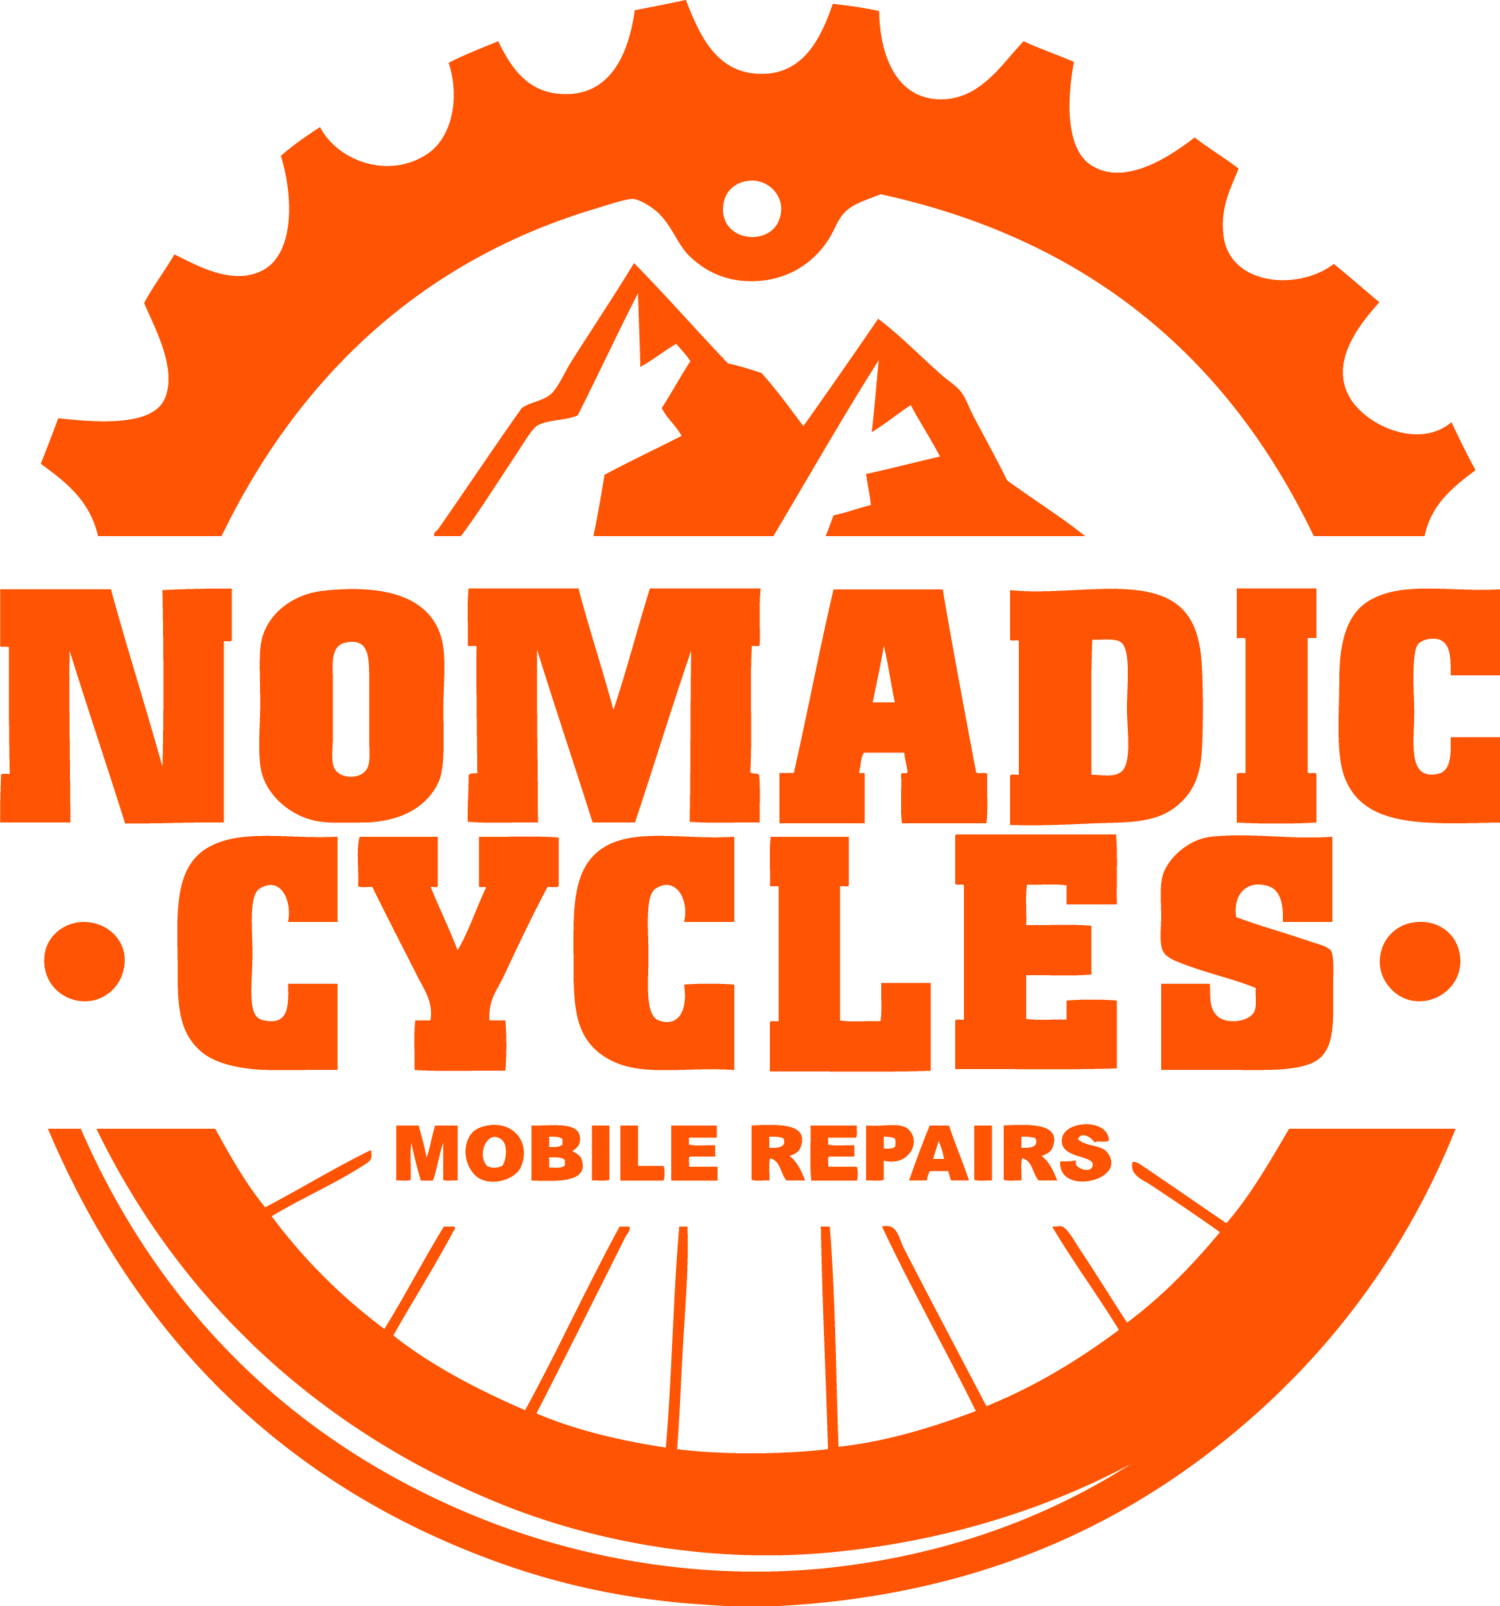 Nomadic Cycles 